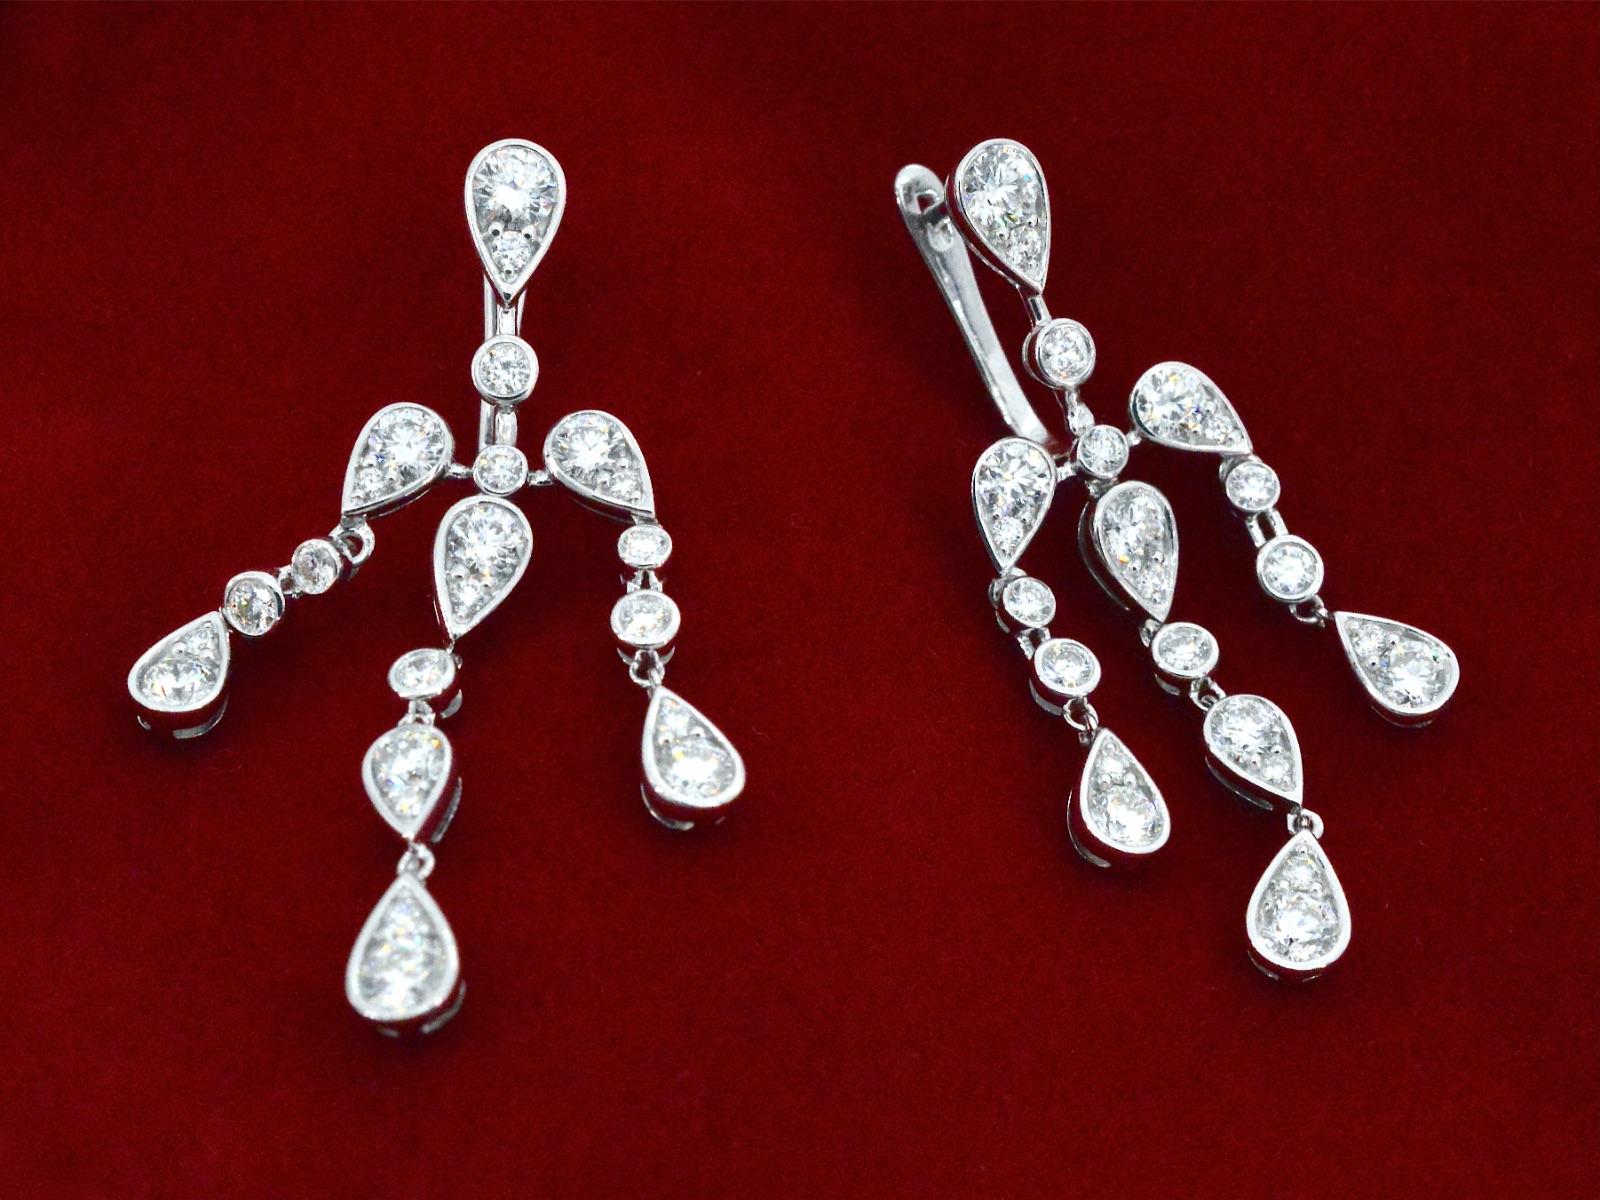 Ces boucles d'oreilles en or blanc 18 carats sont d'une conception unique et spéciale, avec des diamants. L'or blanc 18 carats est un métal de première qualité, très brillant et durable. Les diamants utilisés dans ces boucles d'oreilles sont